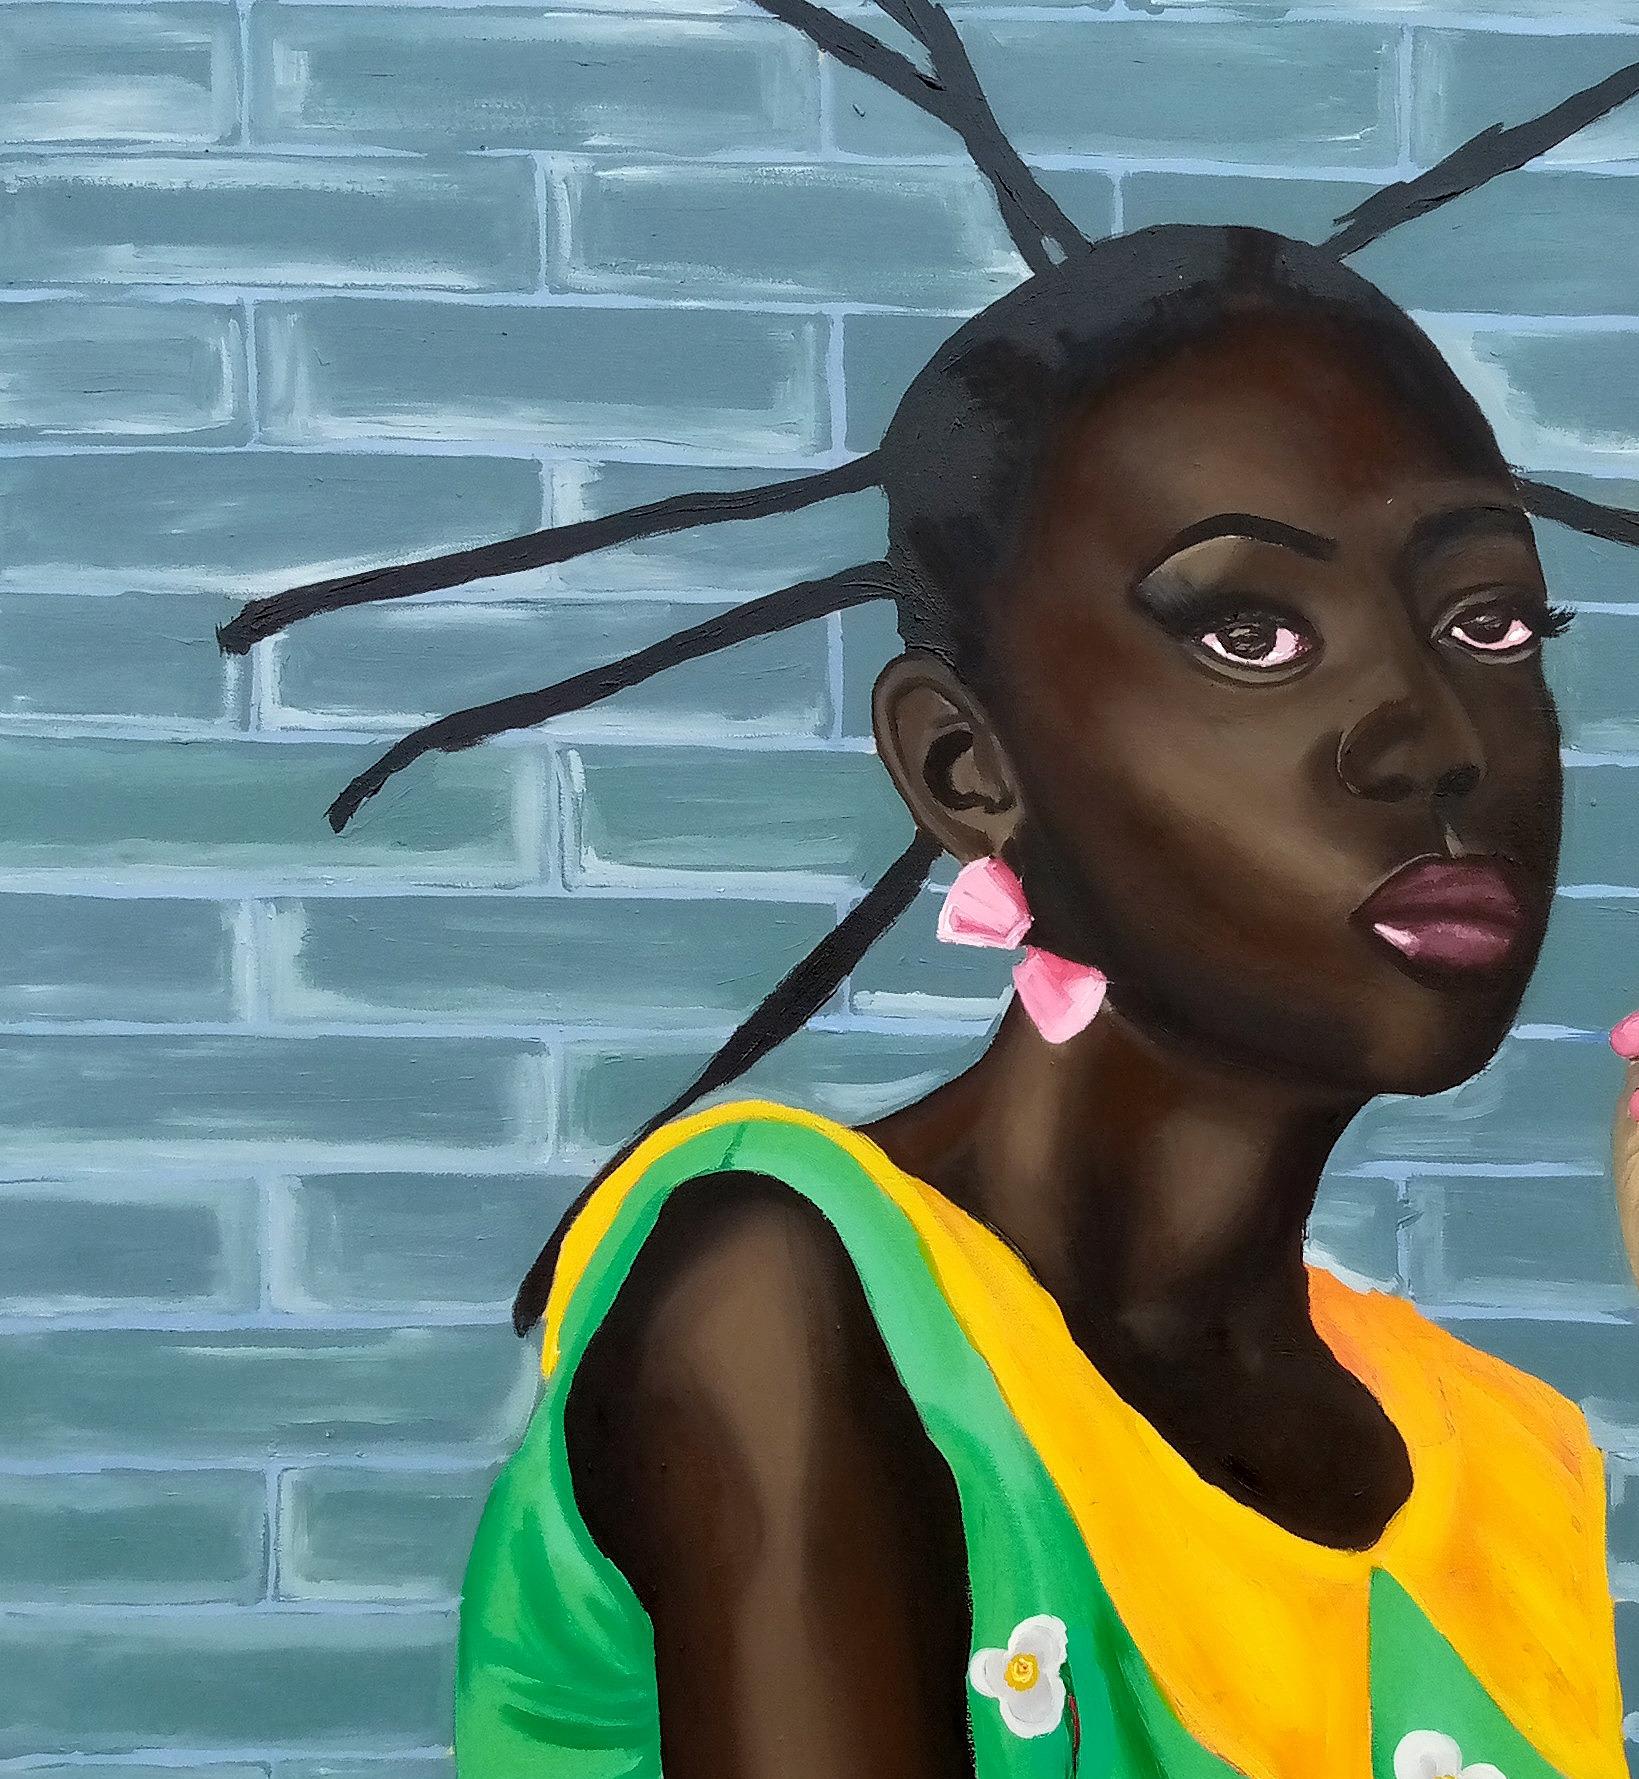 Beauty Within - Painting by Olaosun Oluwapelumi